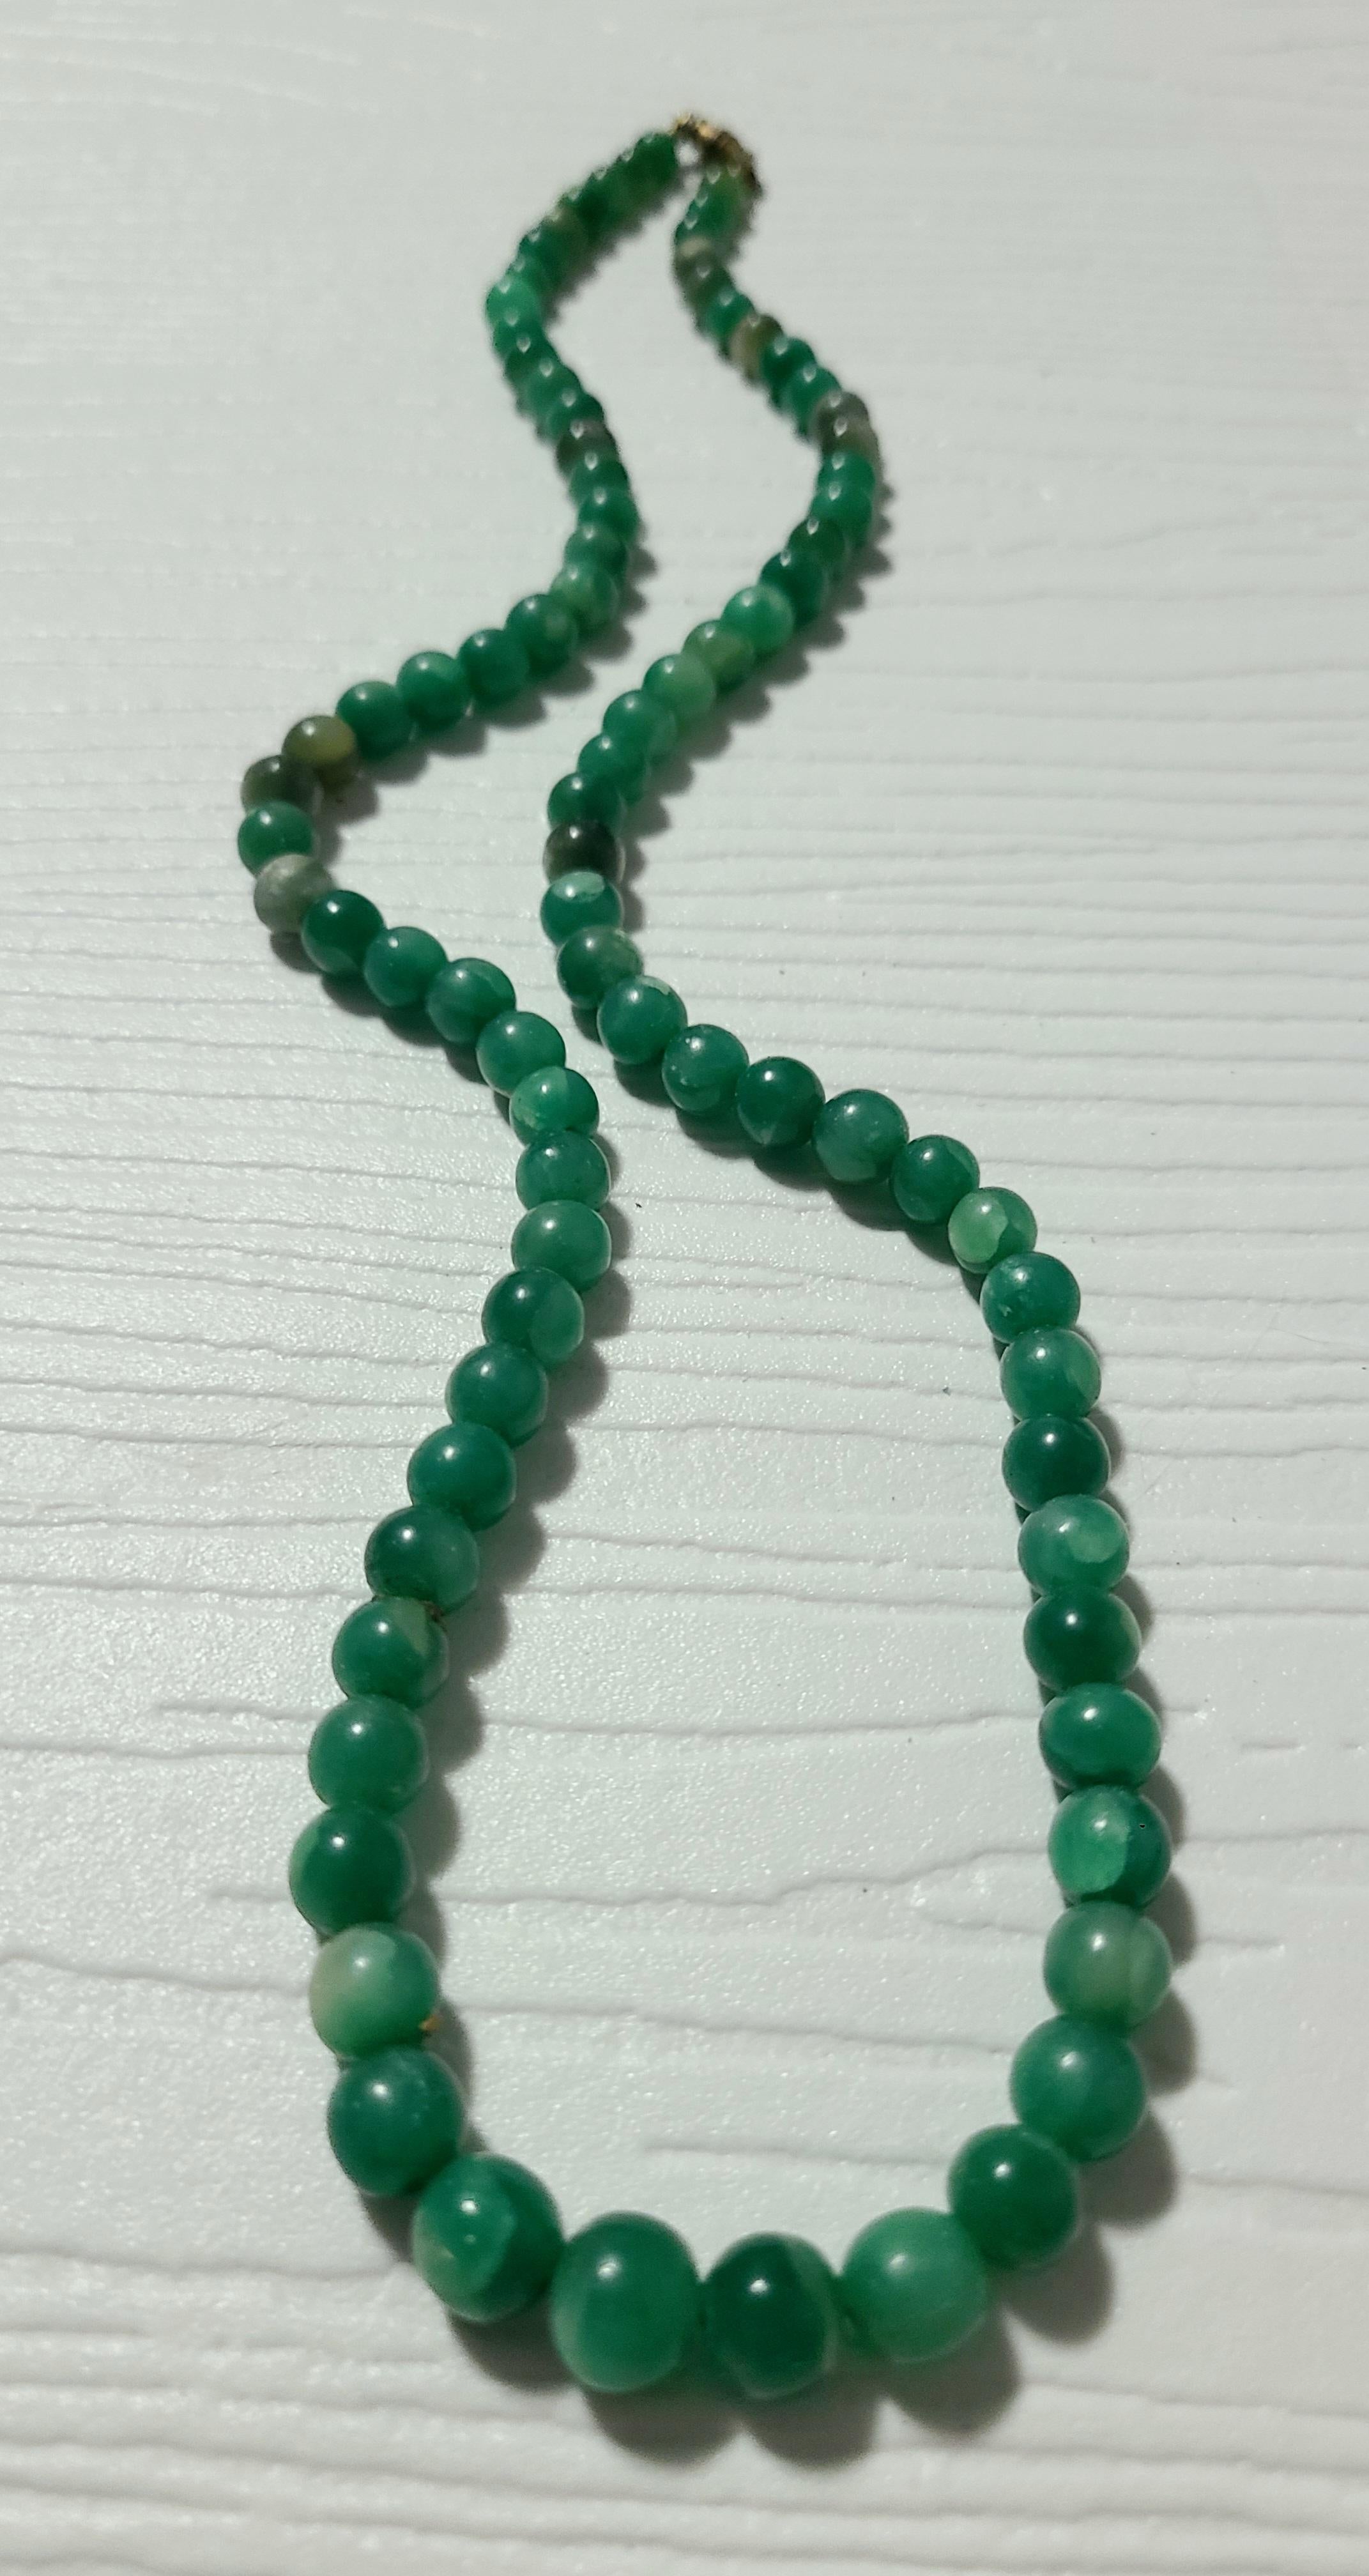 Abgestufte Jade trifft sich an beiden Enden eines Fassverschlusses, um die kaiserliche Perlenkette zu kreieren. 

Jade galt als 